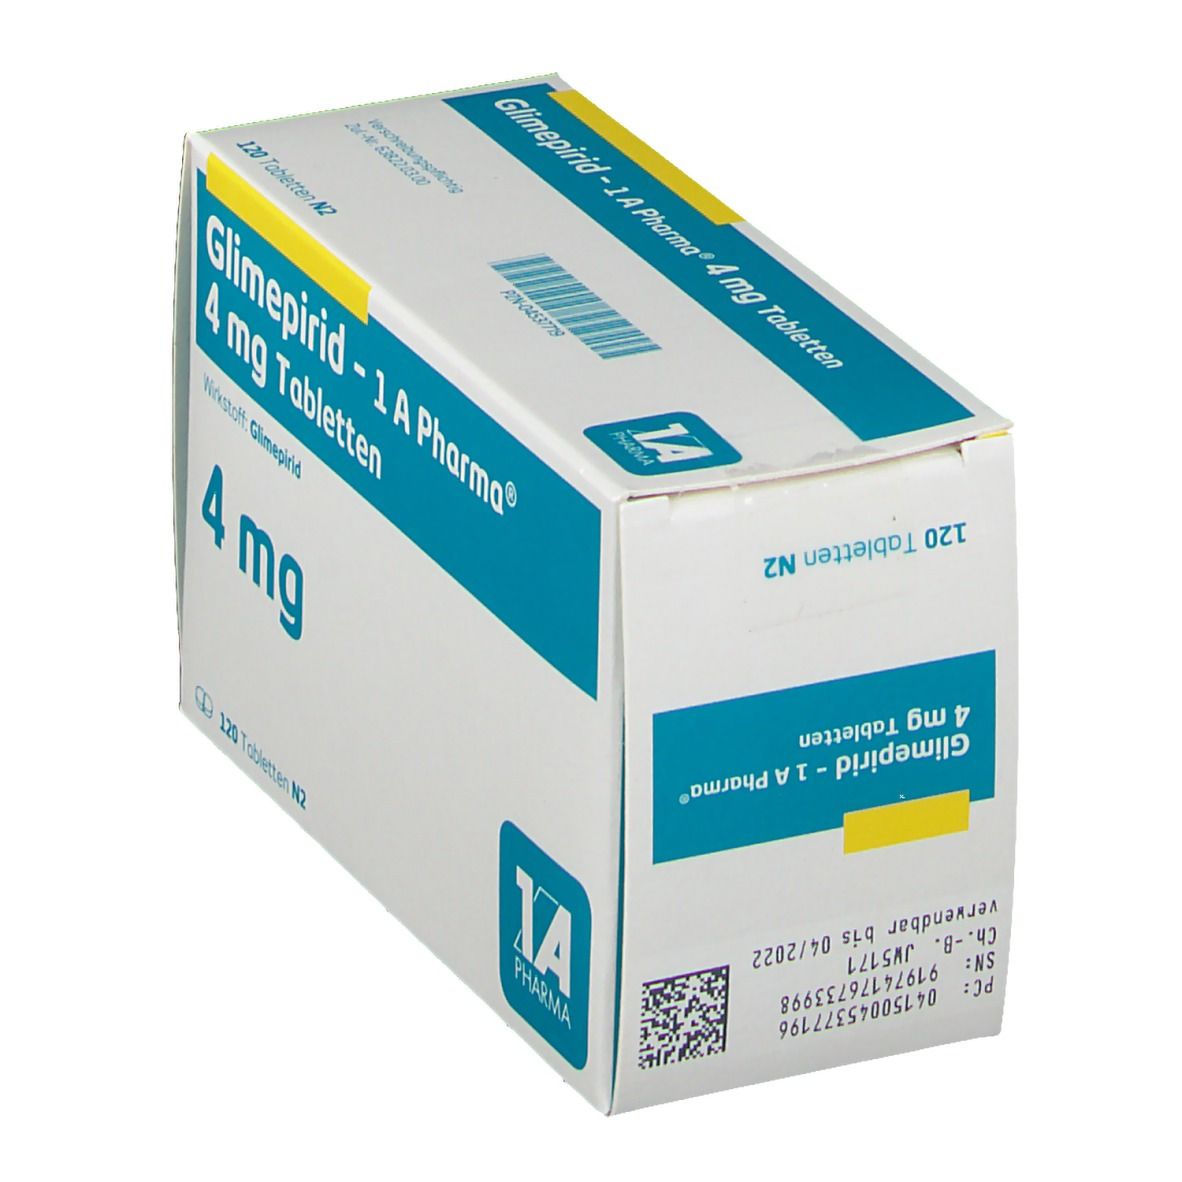 Glimepirid 1A Pharma® 4Mg